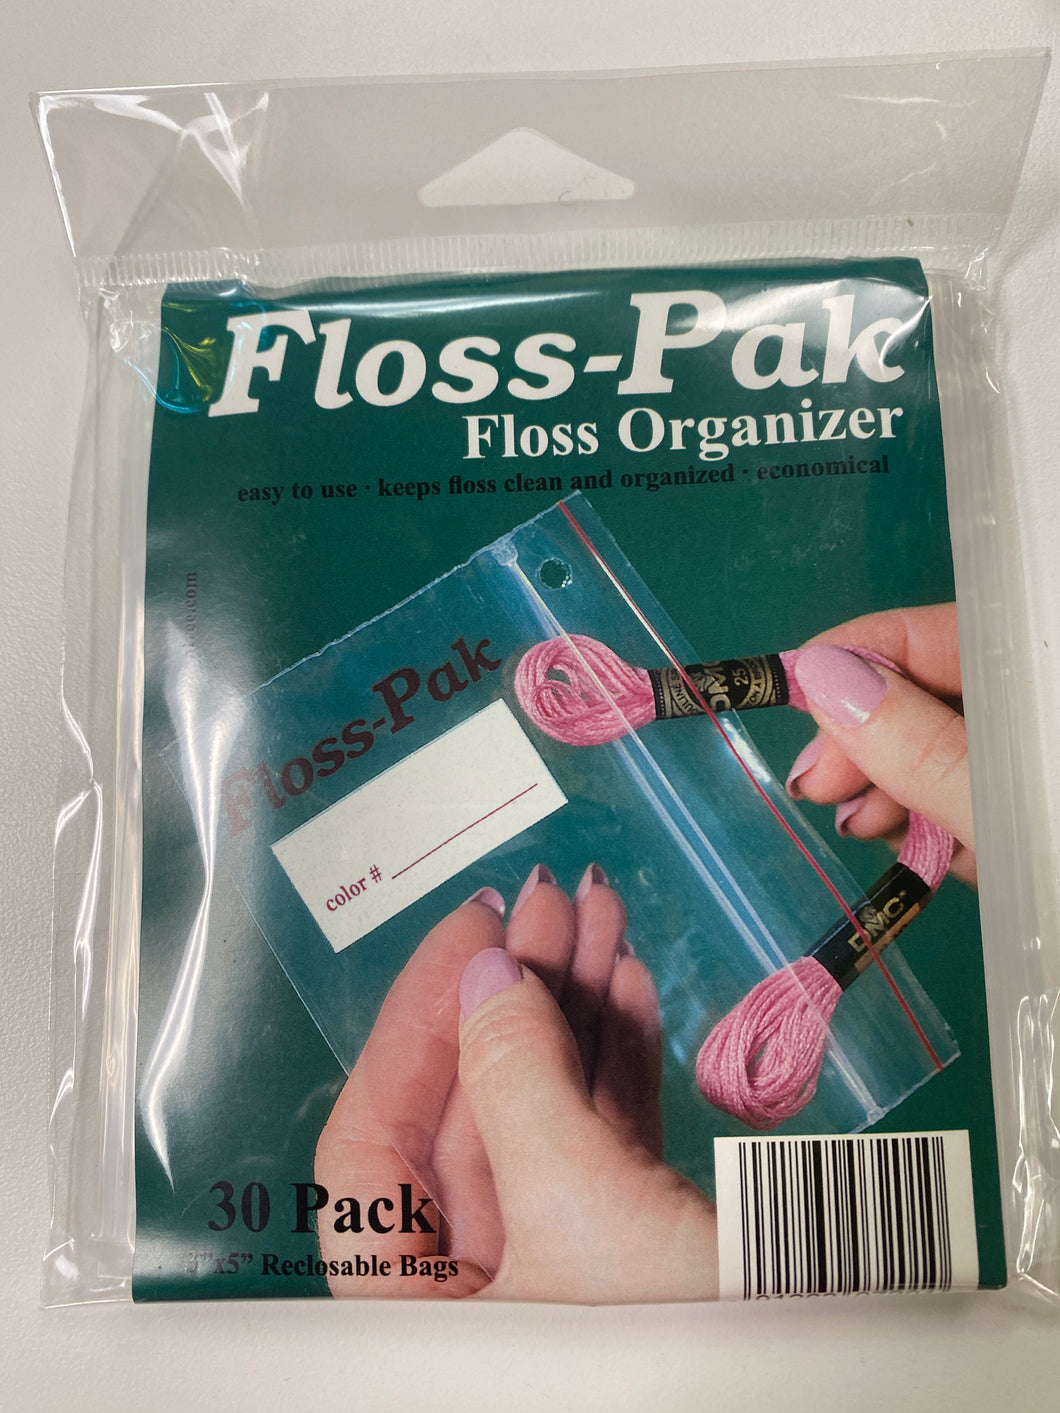 floss-pak starter